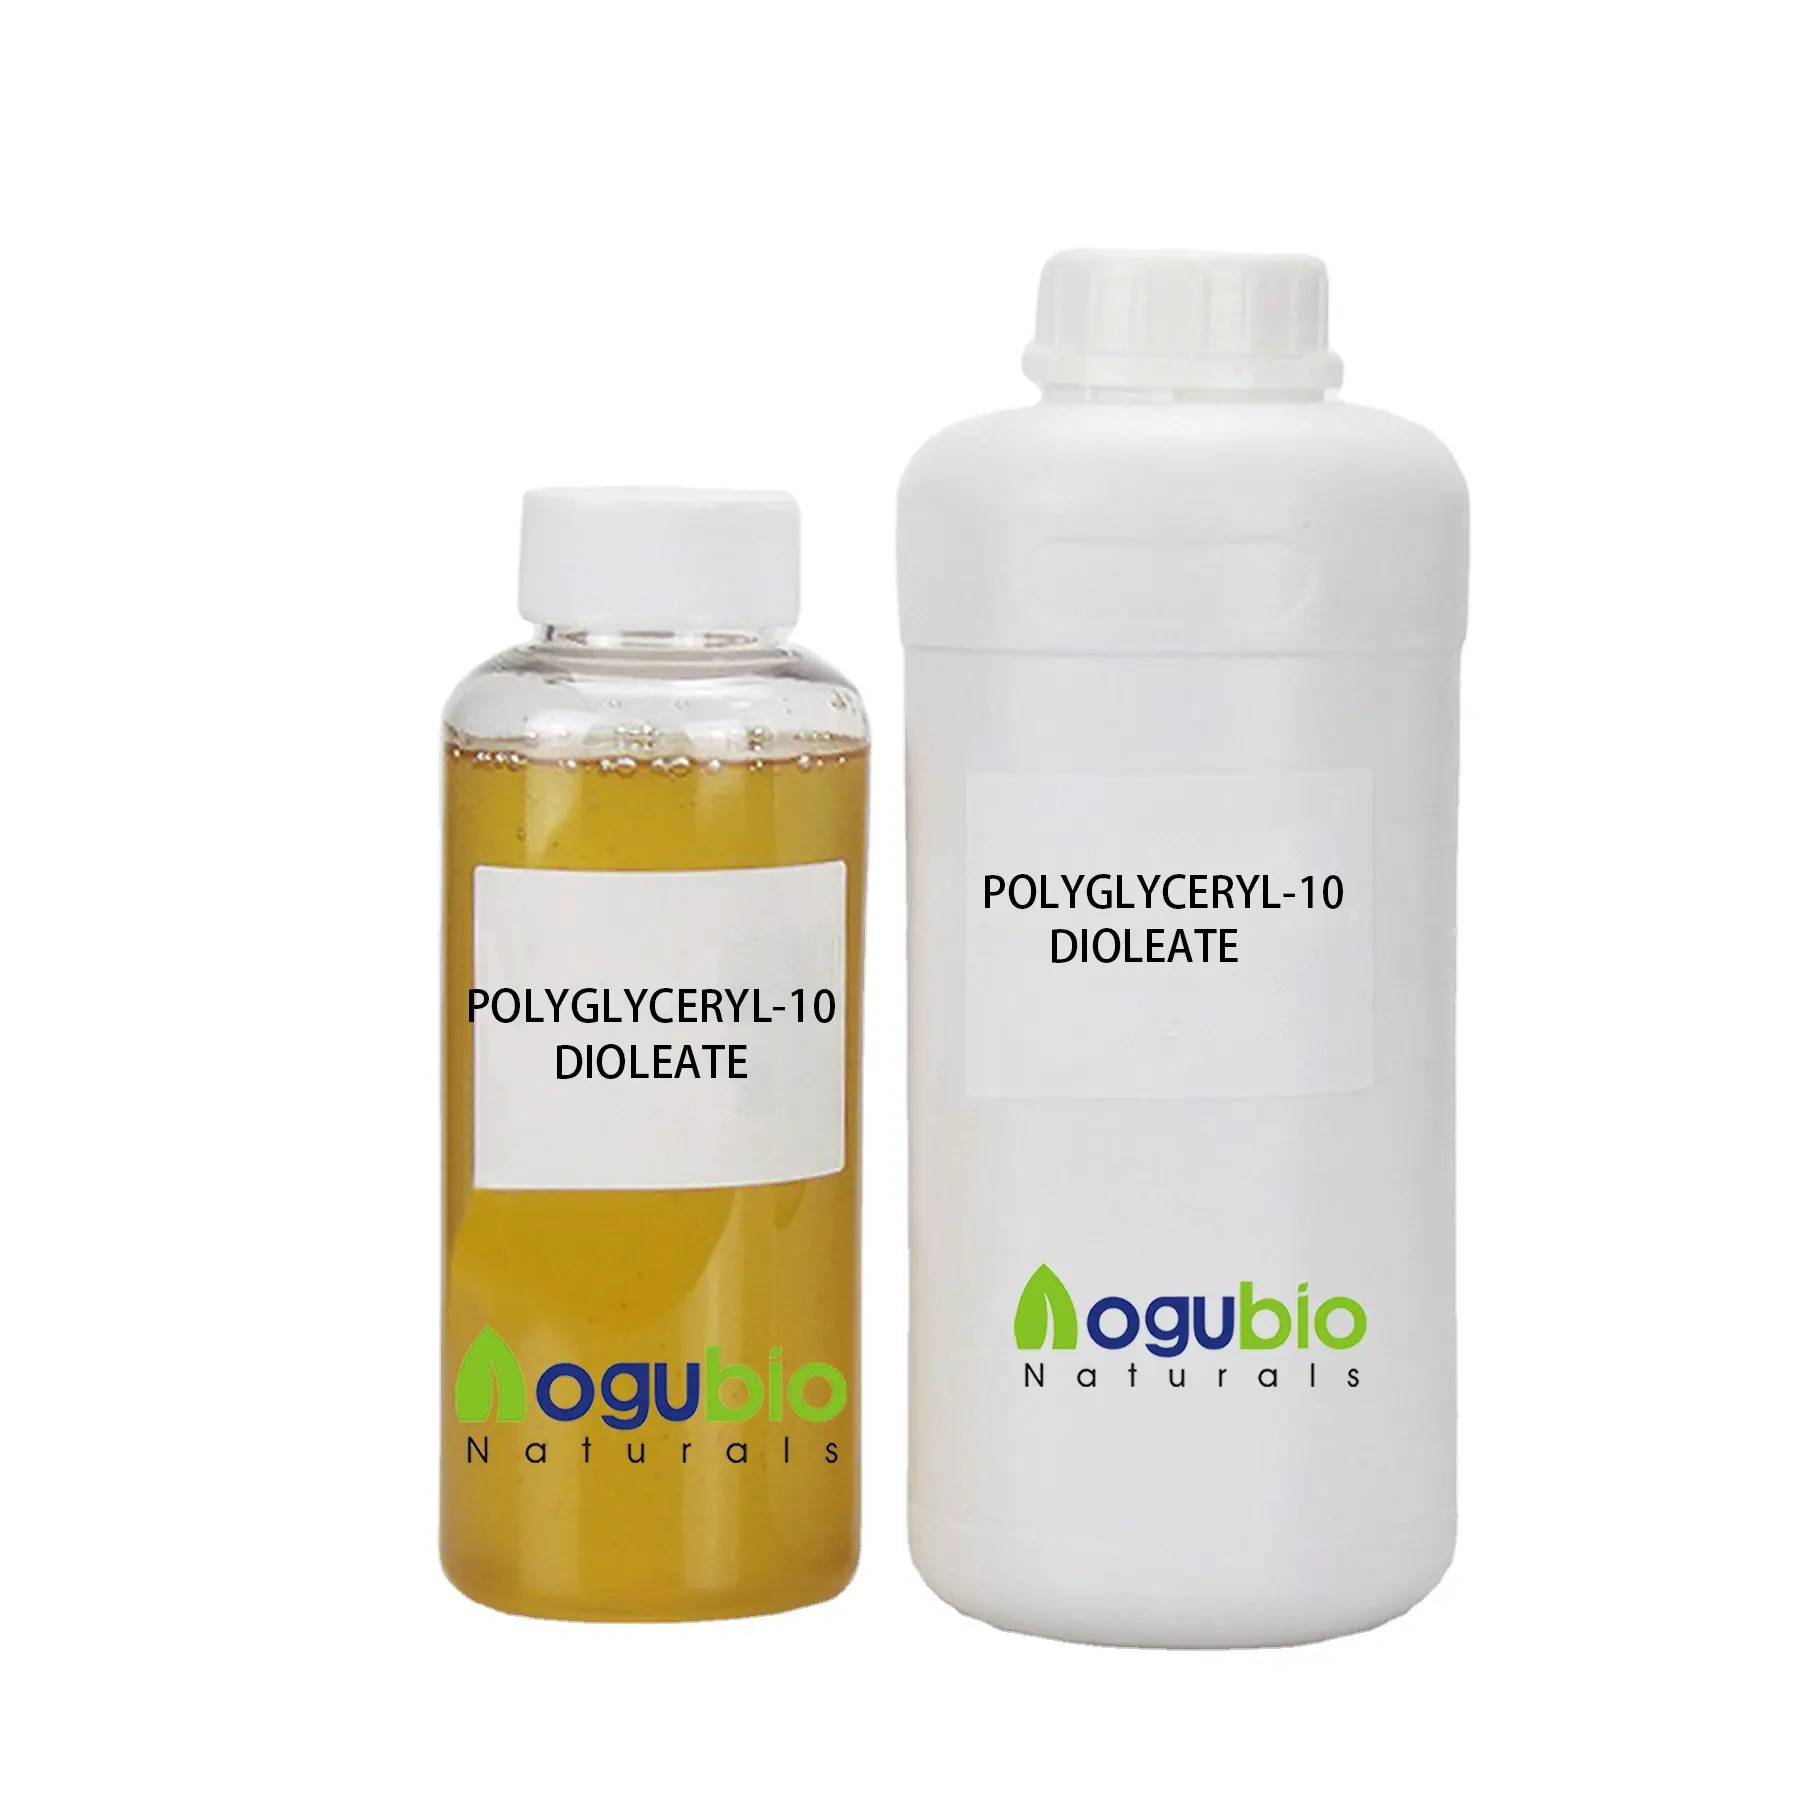 POLYGLYCERYL-10 Dioleaat Heeft Een Specifieke Oplosbaarheid Als Emulgator Die Wordt Gebruikt In Zeep Van Gezichtsreinigingsmiddelen